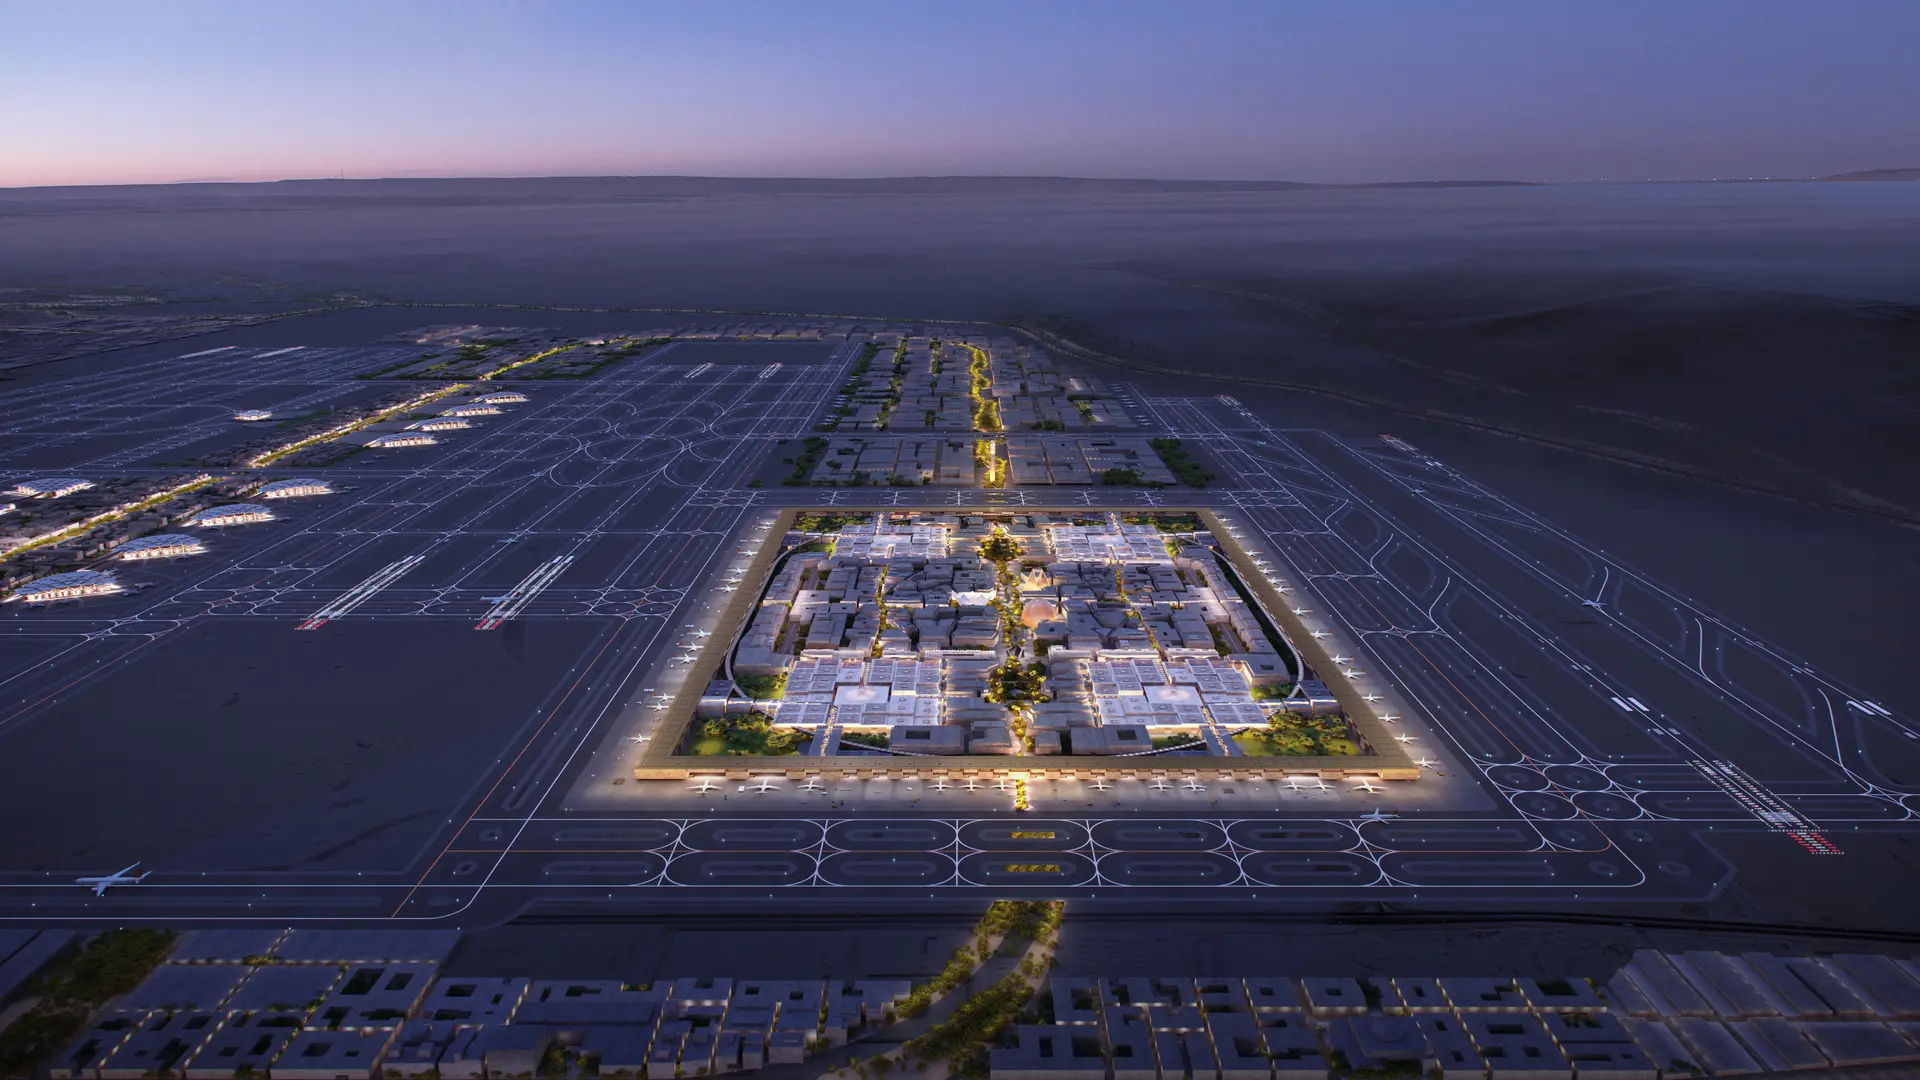 Neue Entwürfe für den internationalen Flughafen King Salman von Foster+Partners vorgestellt - Arch2O.com